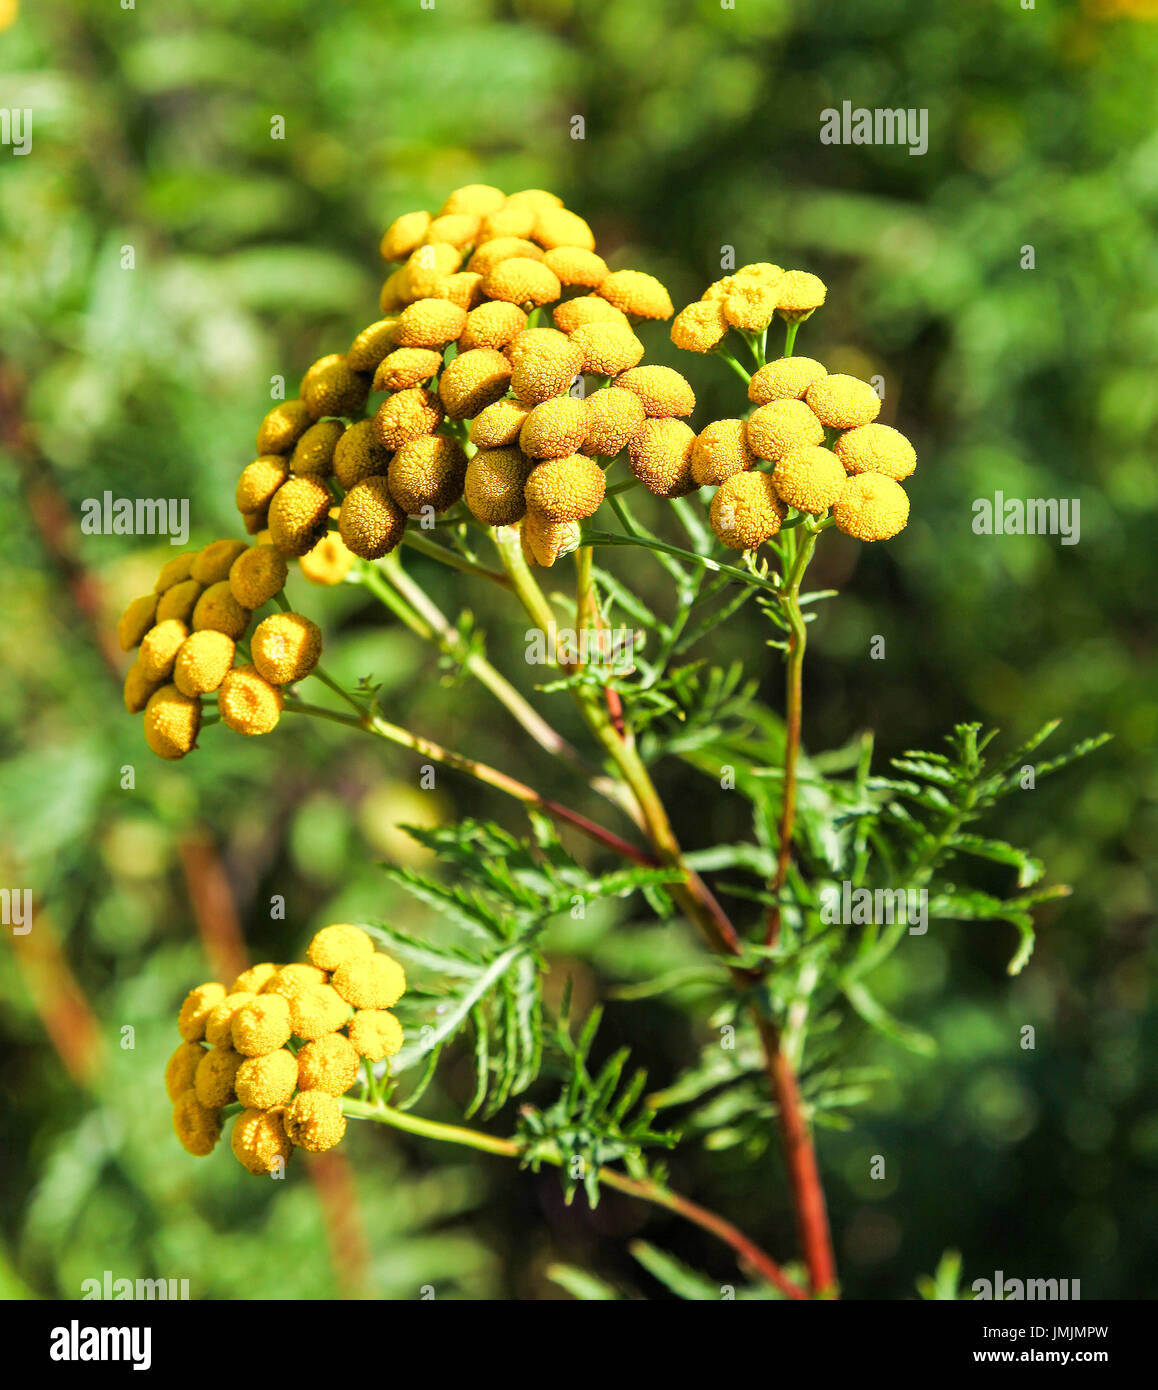 Les fleurs jaunes d'une politique commune de tanaisie (Tanacetum vulgare), une plante vivace, plante herbacée de la famille des asters Banque D'Images